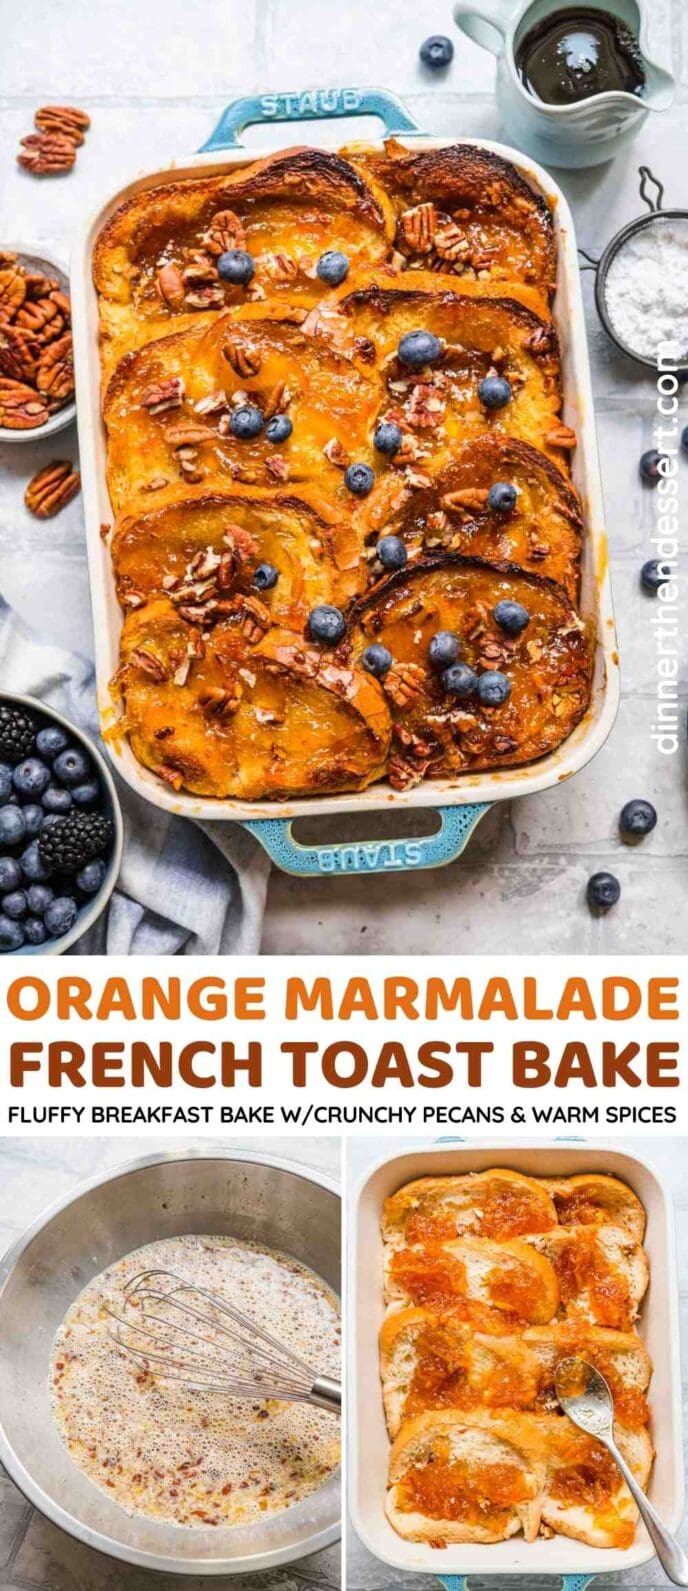 Orange Marmalade French Toast Bake Collage